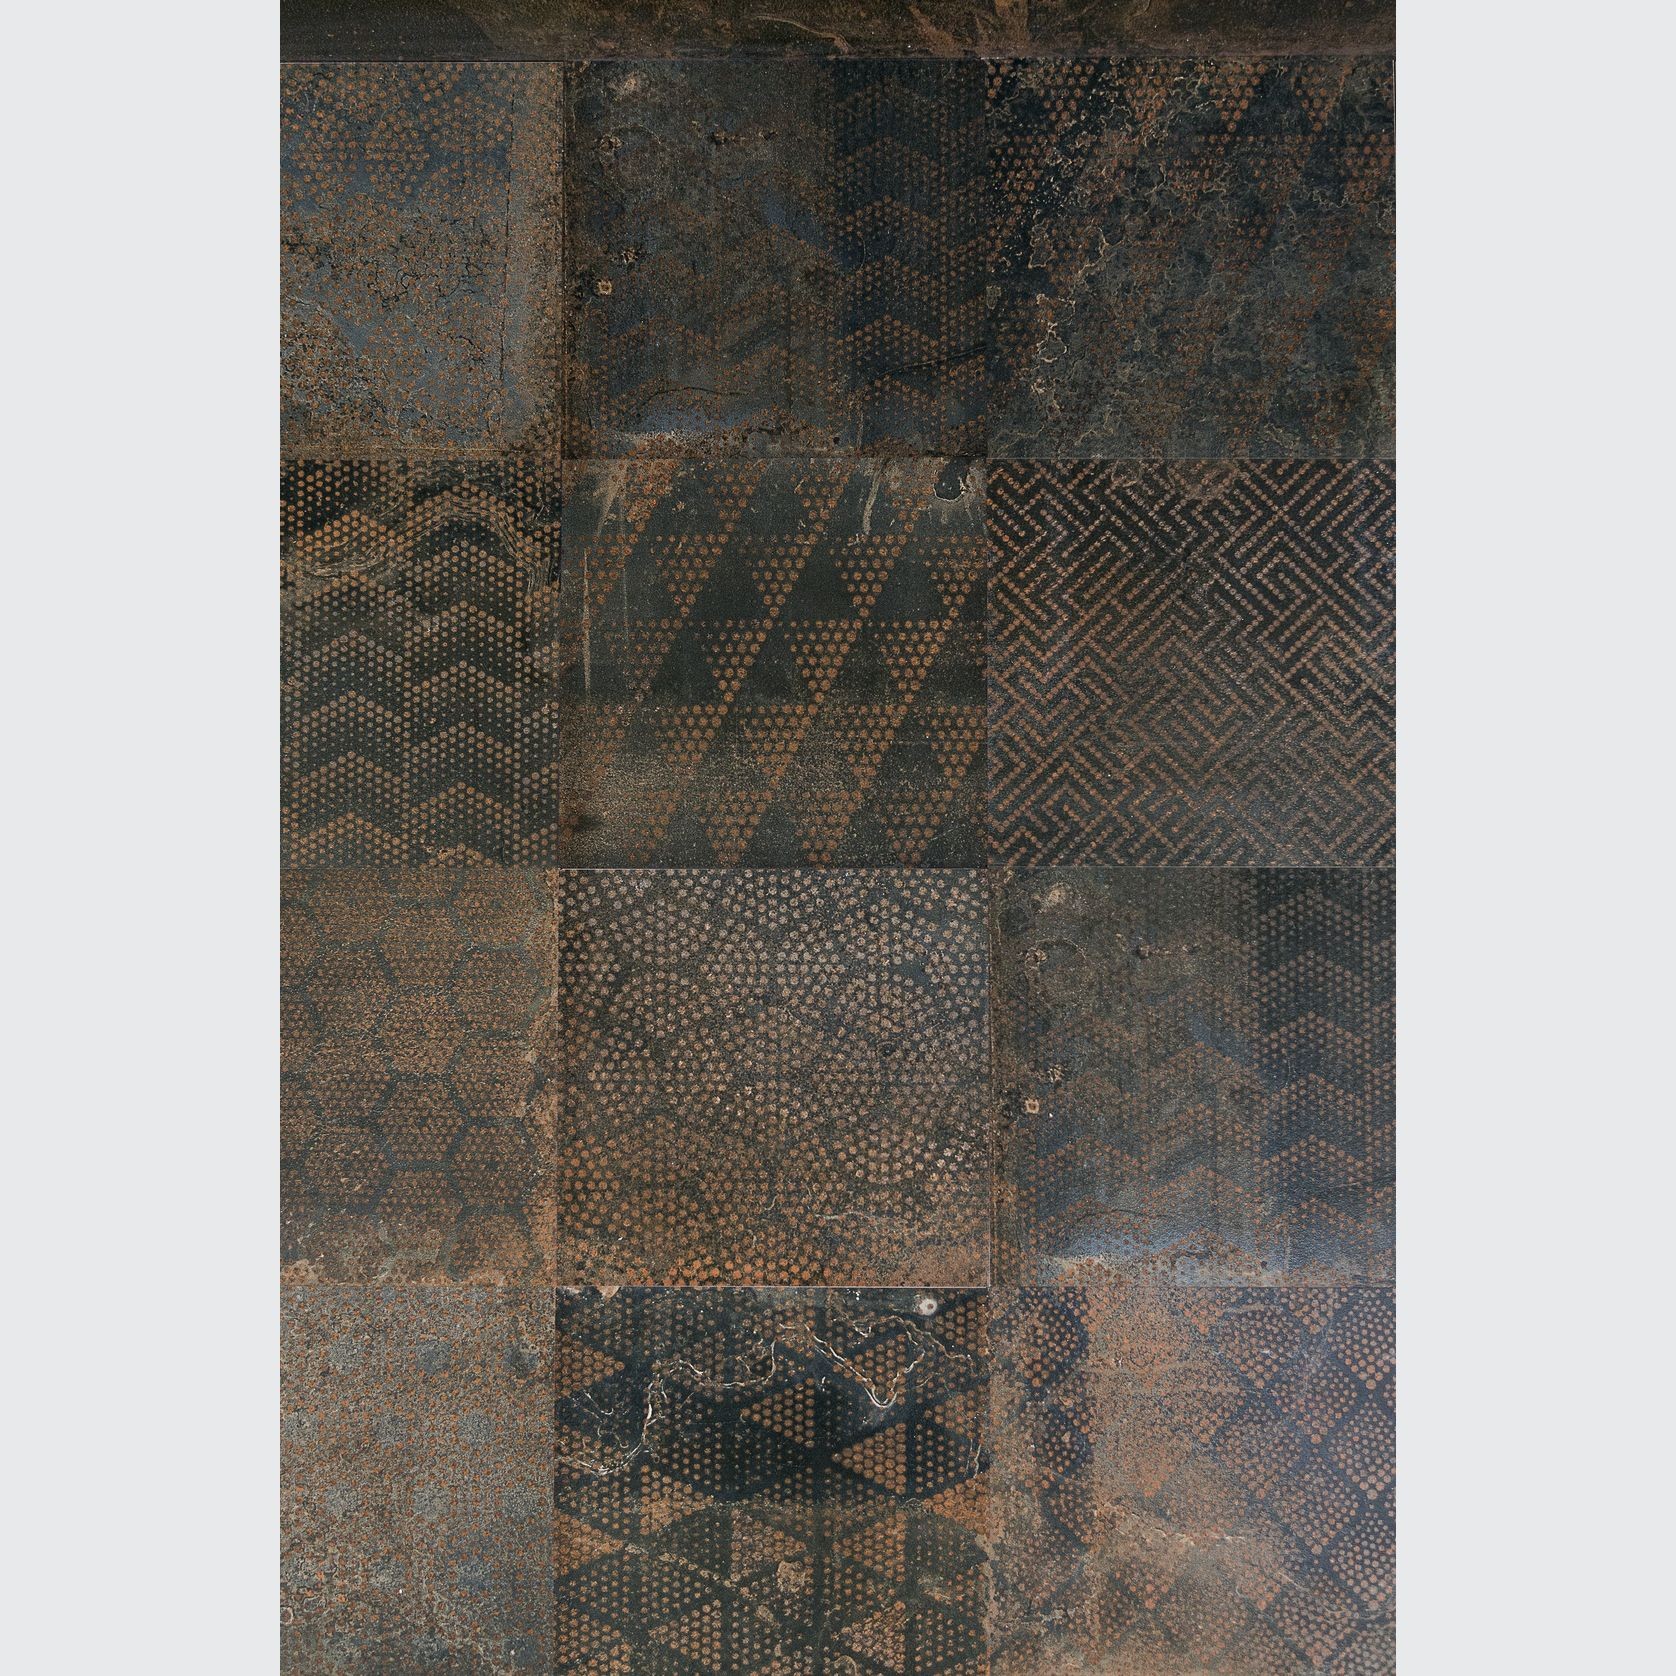 Oxidart Tile gallery detail image